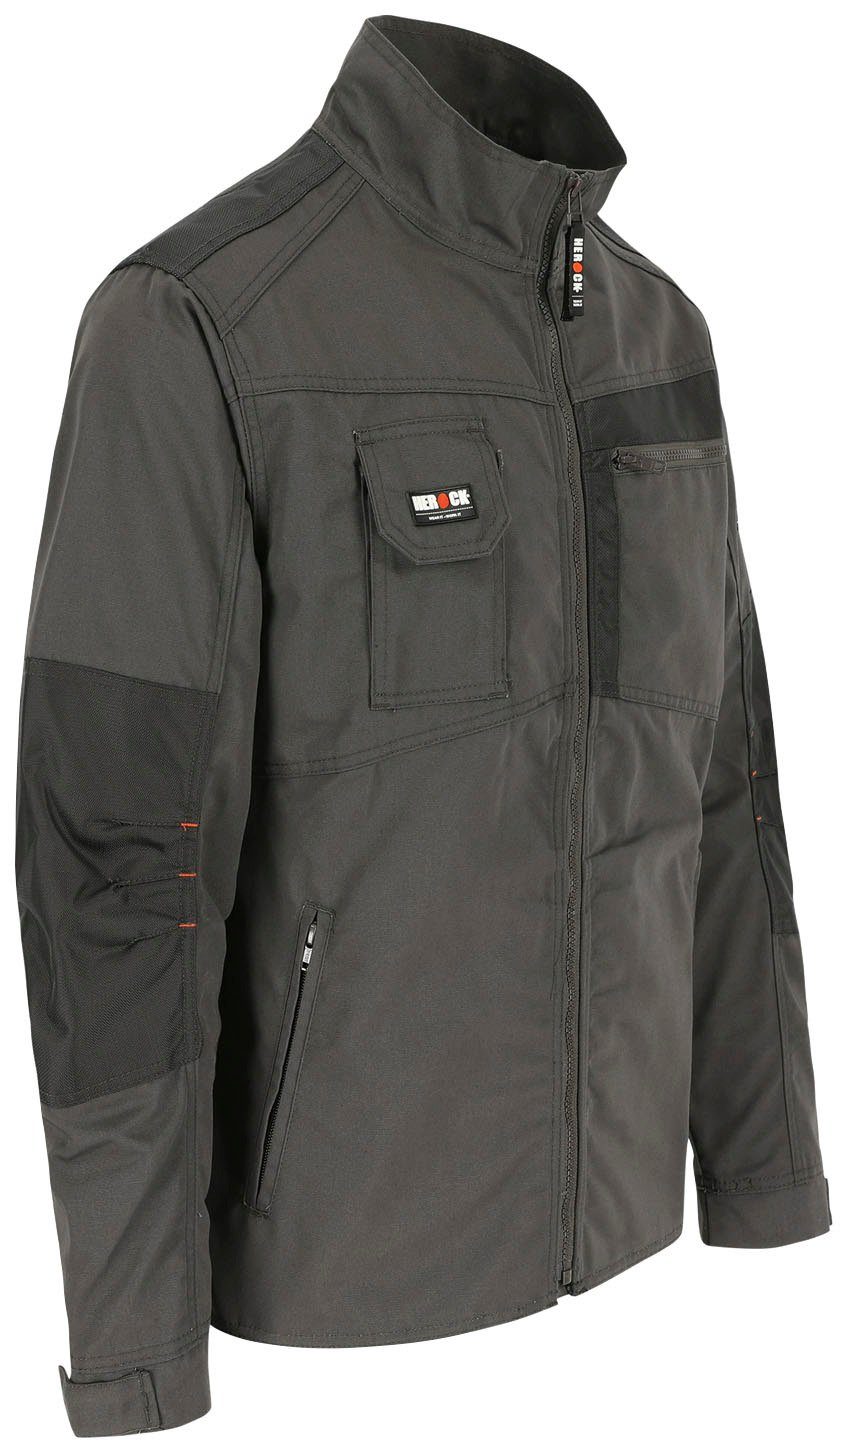 Taschen grau Bündchen Herock verstellbare Jacke Arbeitsjacke - Wasserabweisend robust - - Anzar 7